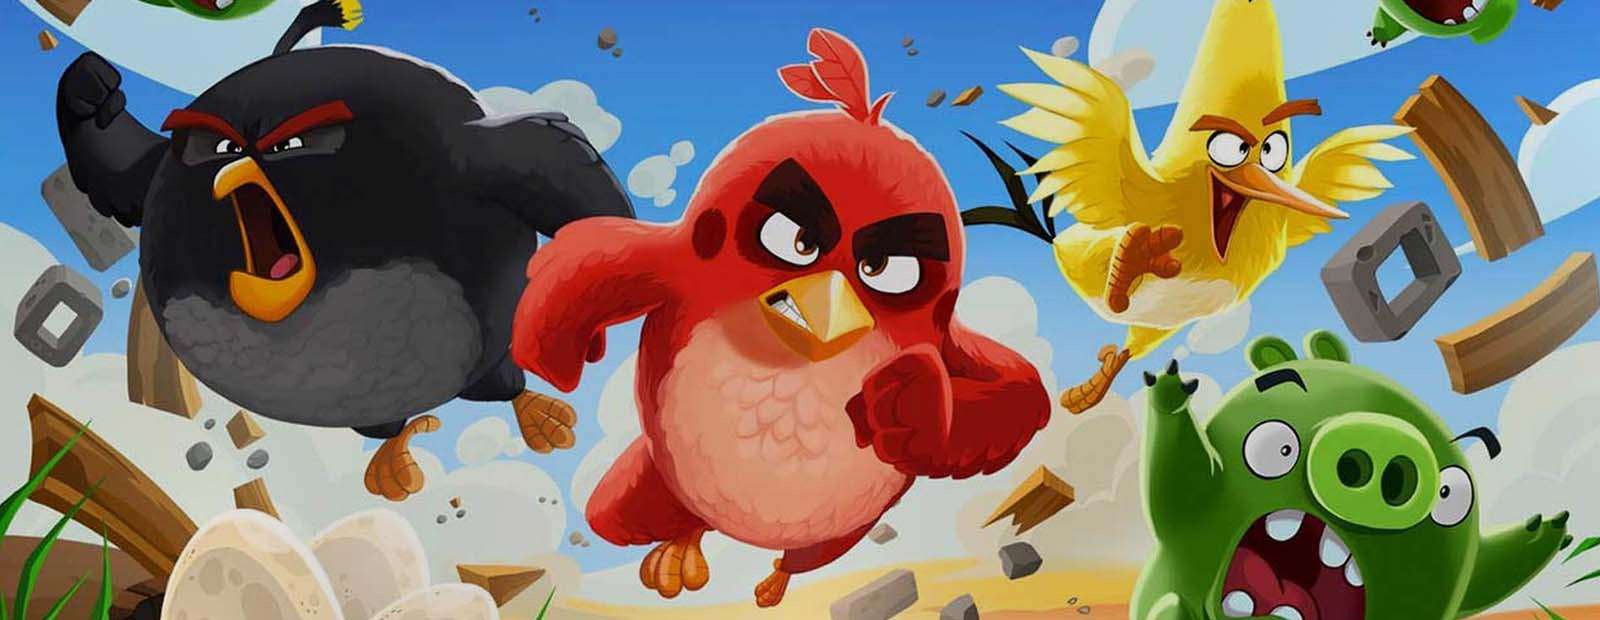 Обкладинка гри "Angry Birds"